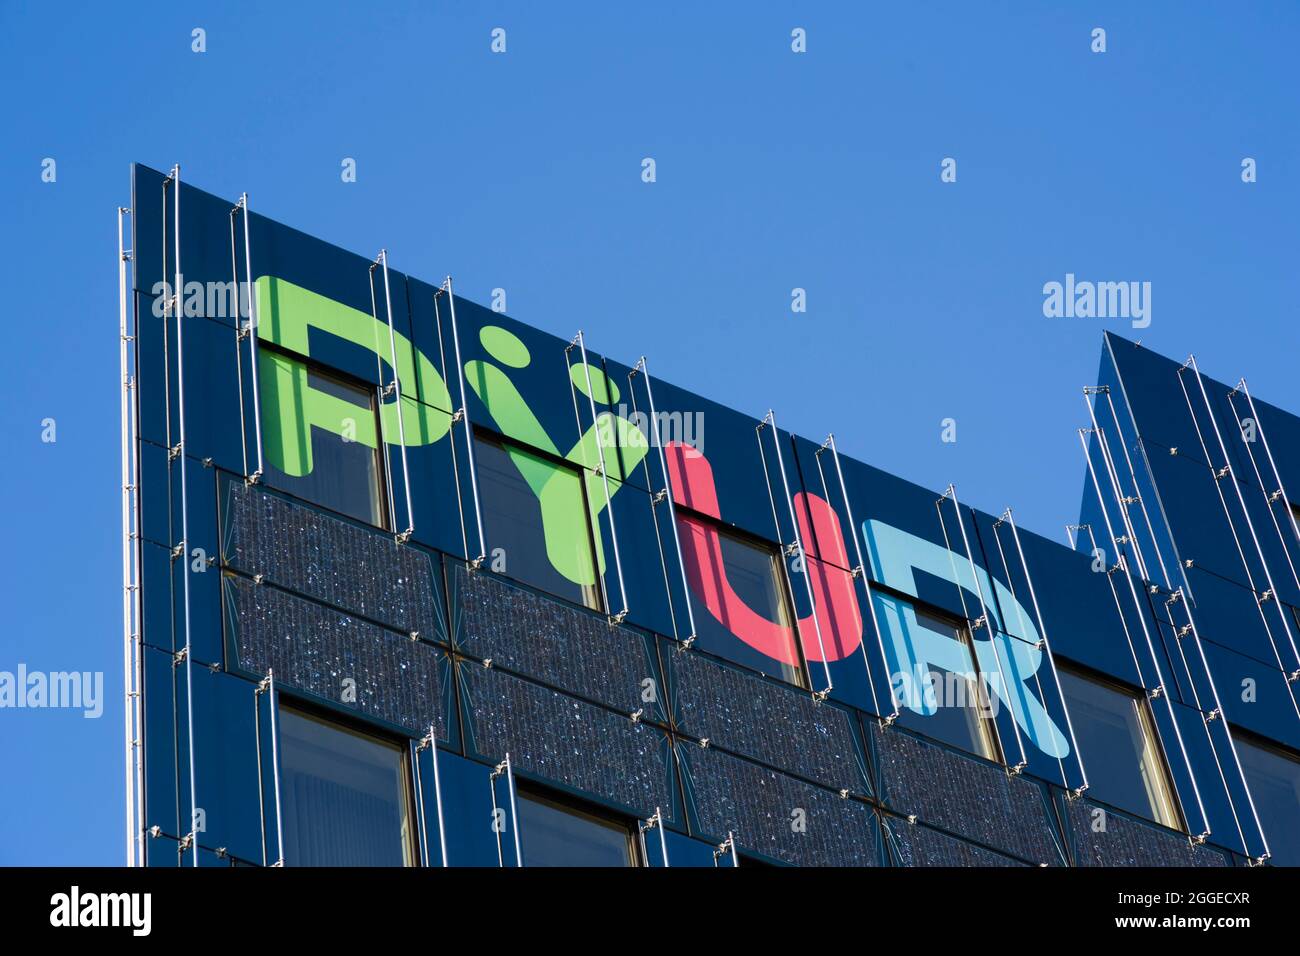 Pyur Company, Kabel-TV-Internet und Telefongebühren, Berlin, Deutschland  Stockfotografie - Alamy